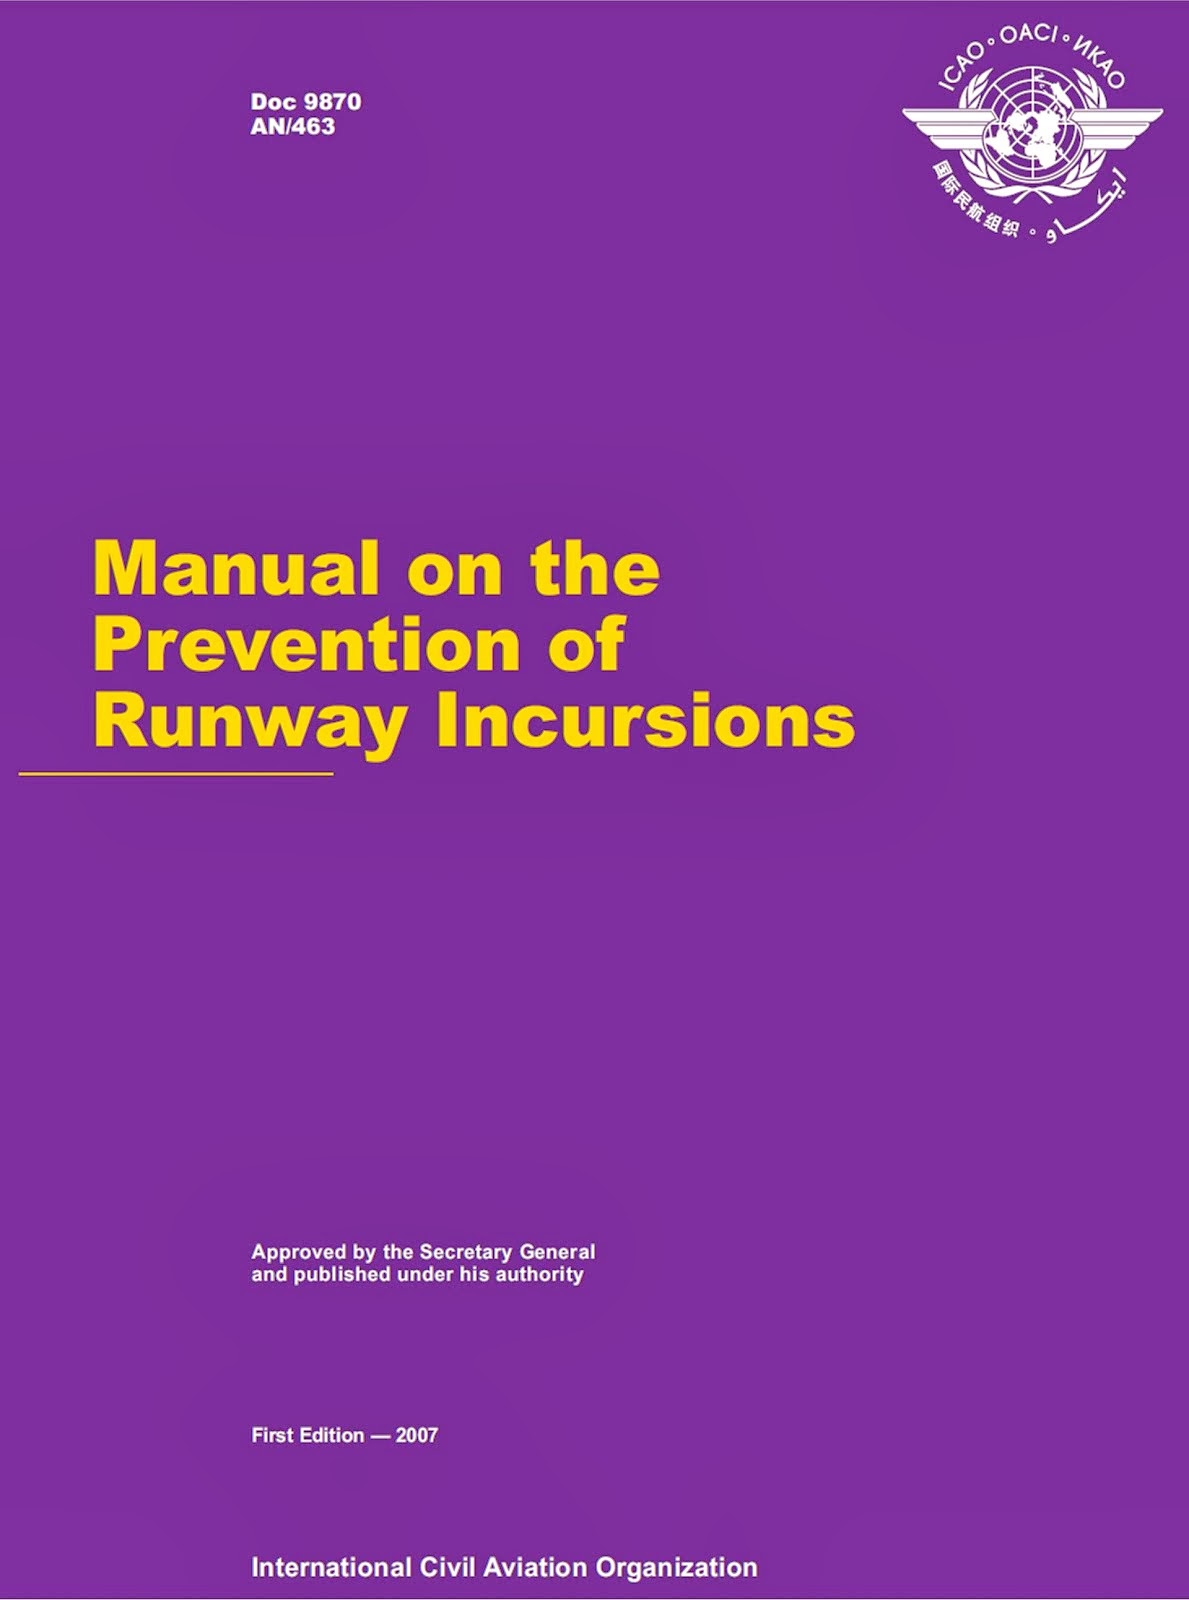 DOC 9870 - Manual para a Prevenção de Incursões em Pista (ICAO)